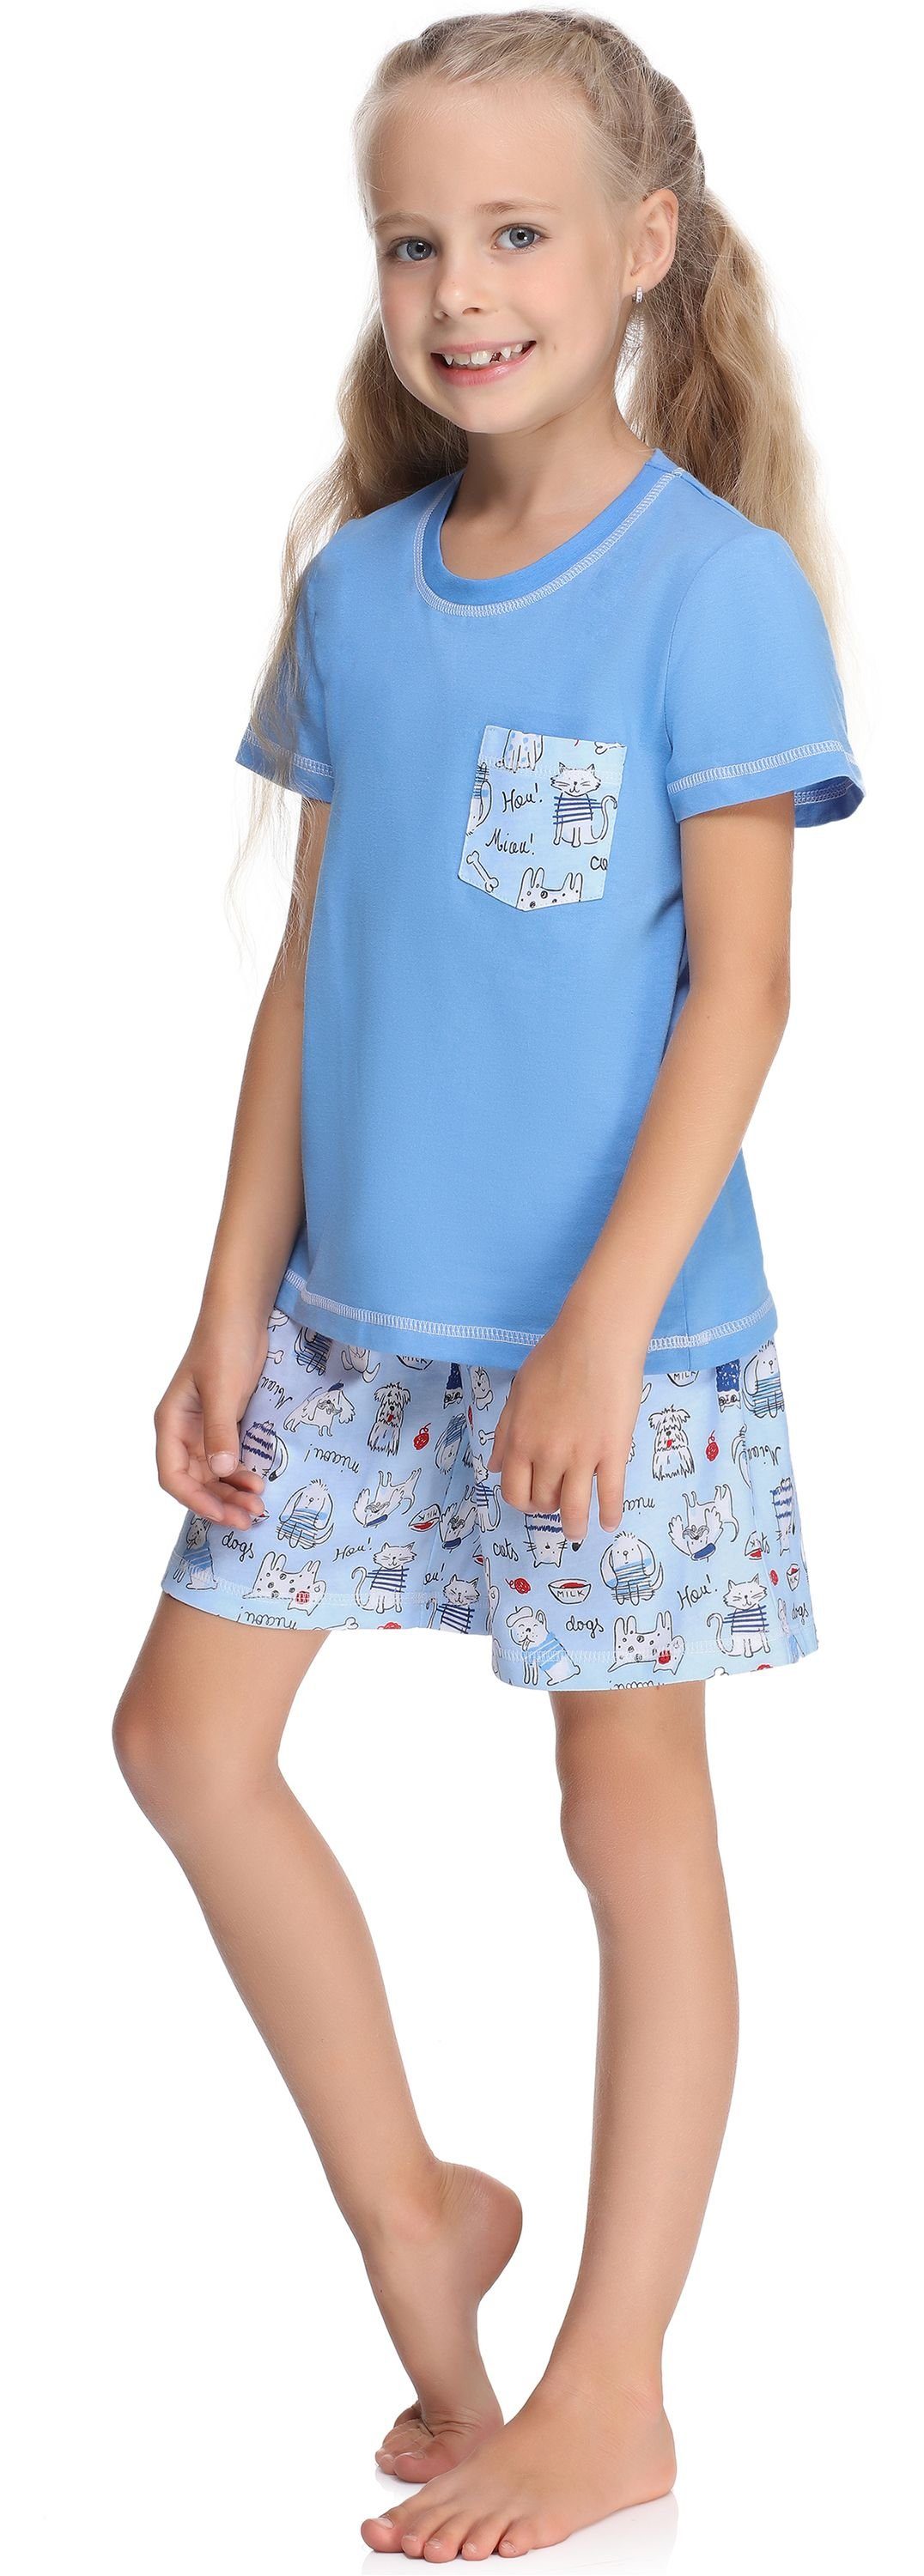 Style Mädchen aus Blau/Hunde/Katze Baumwolle Kurz Schlafanzüge Pyjama Schlafanzug MS10-292 Set Merry